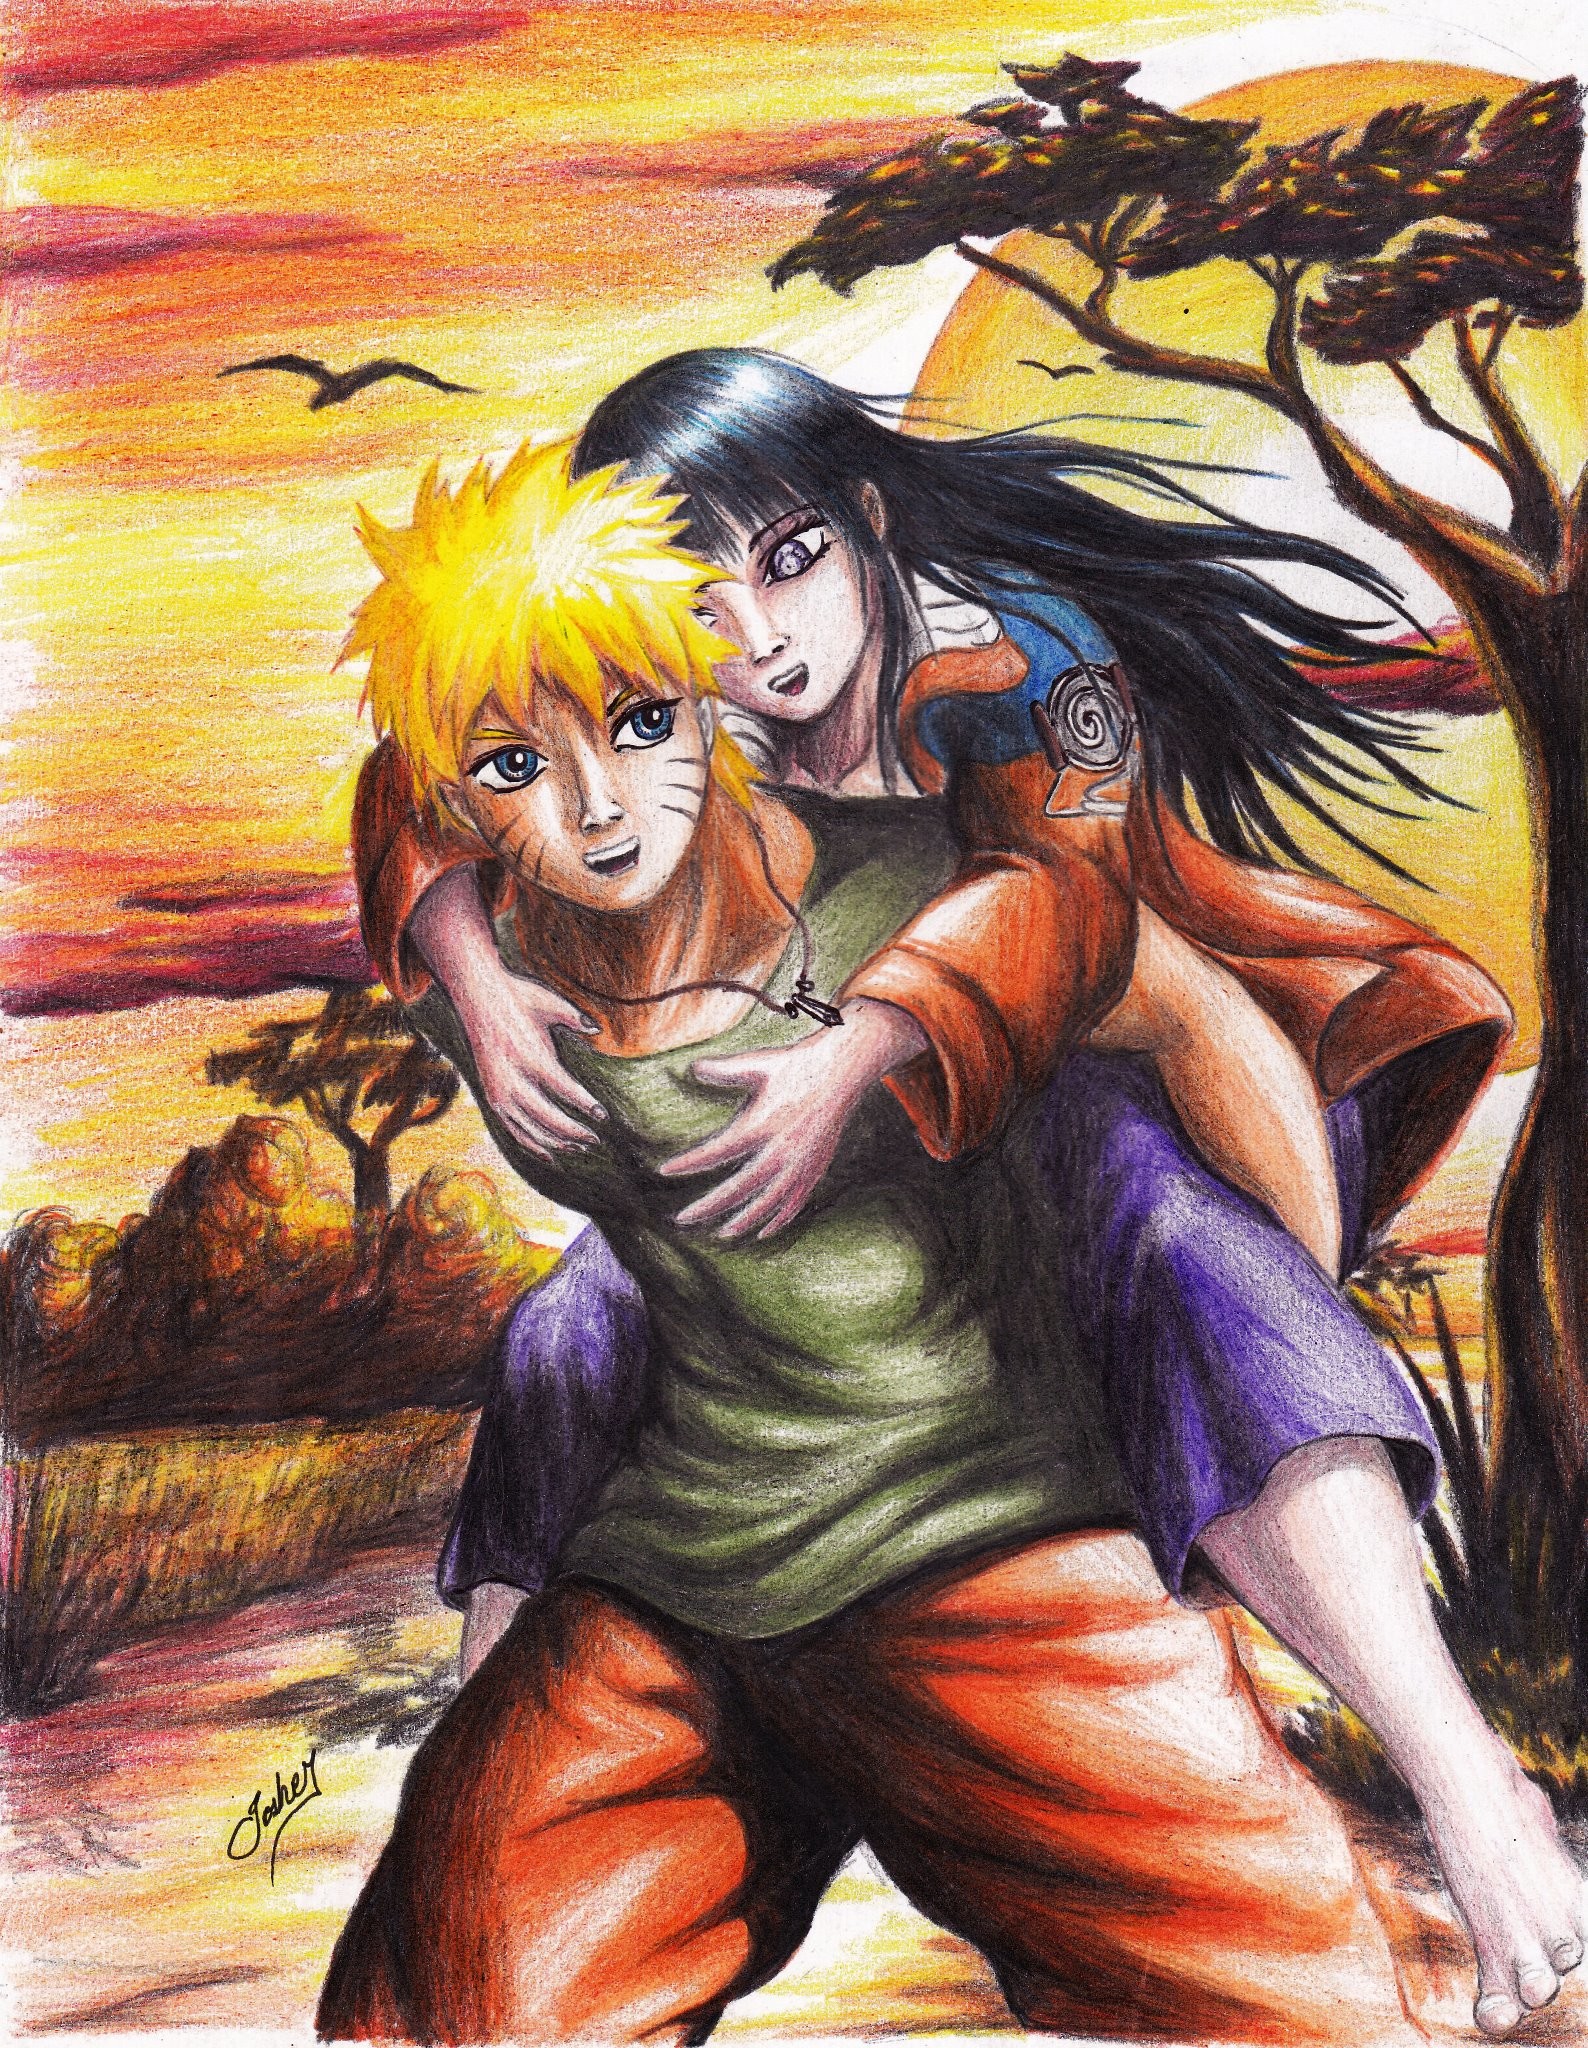 Naruto Love Hinata Wallpaper 64 Images